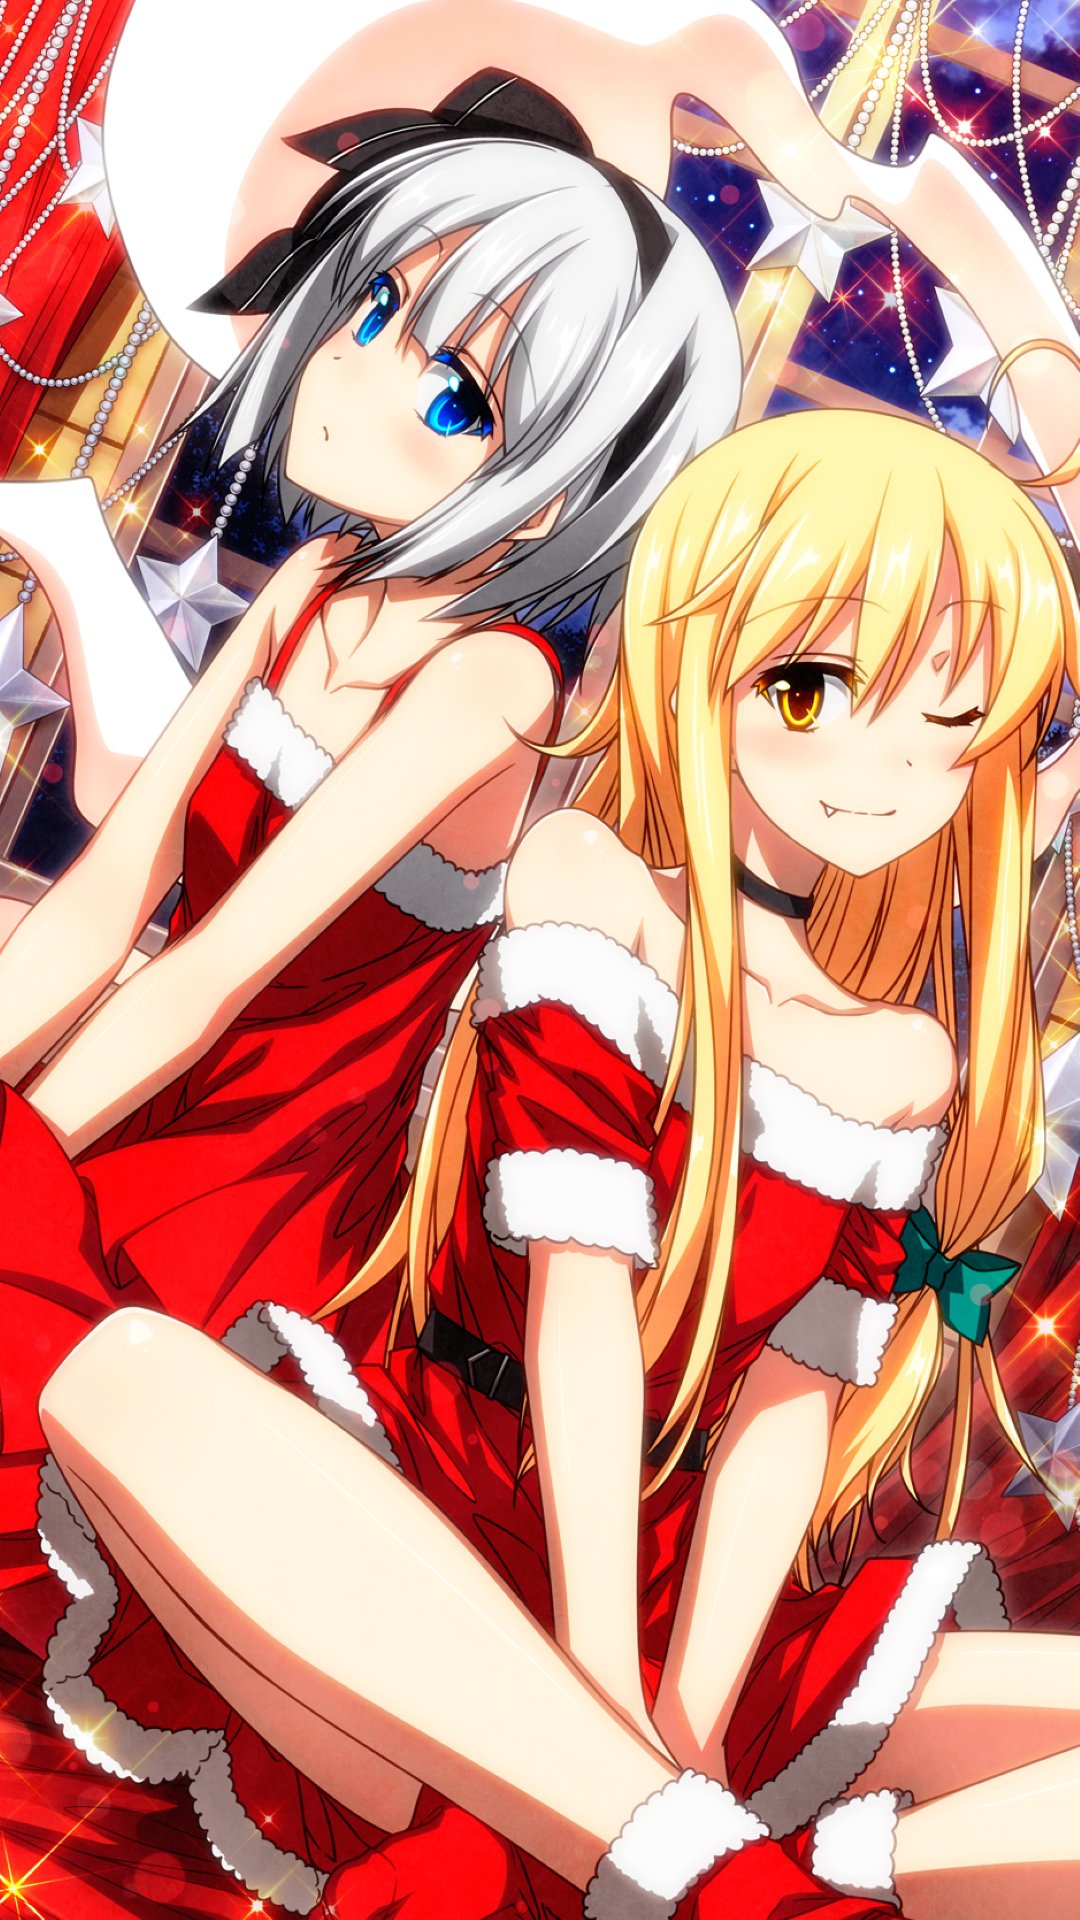 Christmas anime wallpaper 1080×1920 - Kawaii Mobile